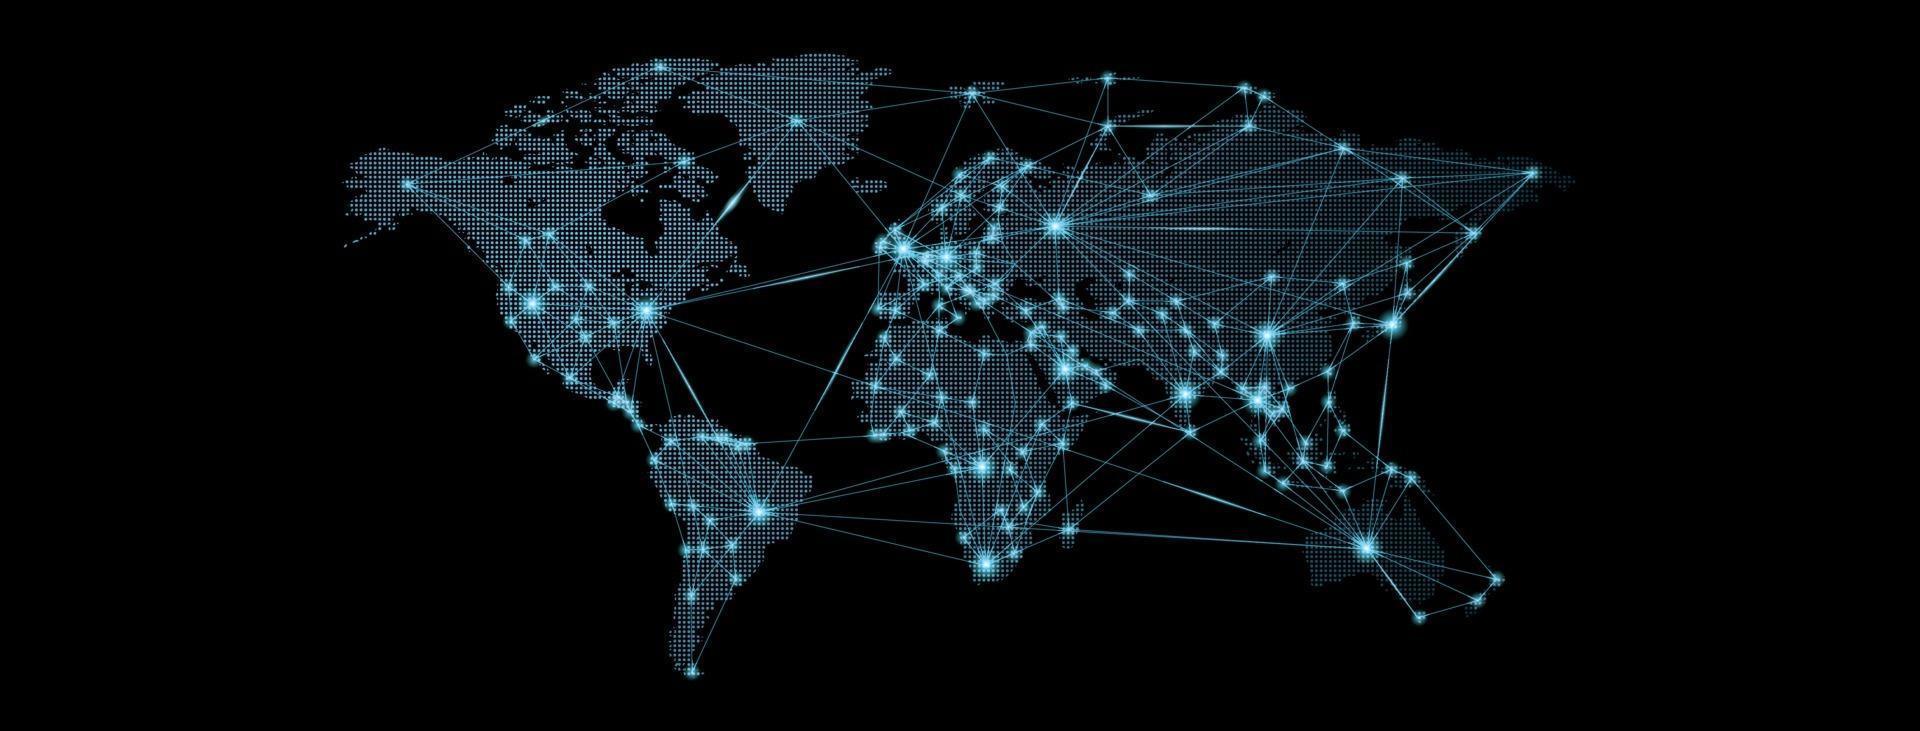 mapa del mundo. red social global. futuro. vector. fondo futurista azul con el planeta tierra. Internet y tecnología. fondo geométrico punto de luz línea de luz. vector